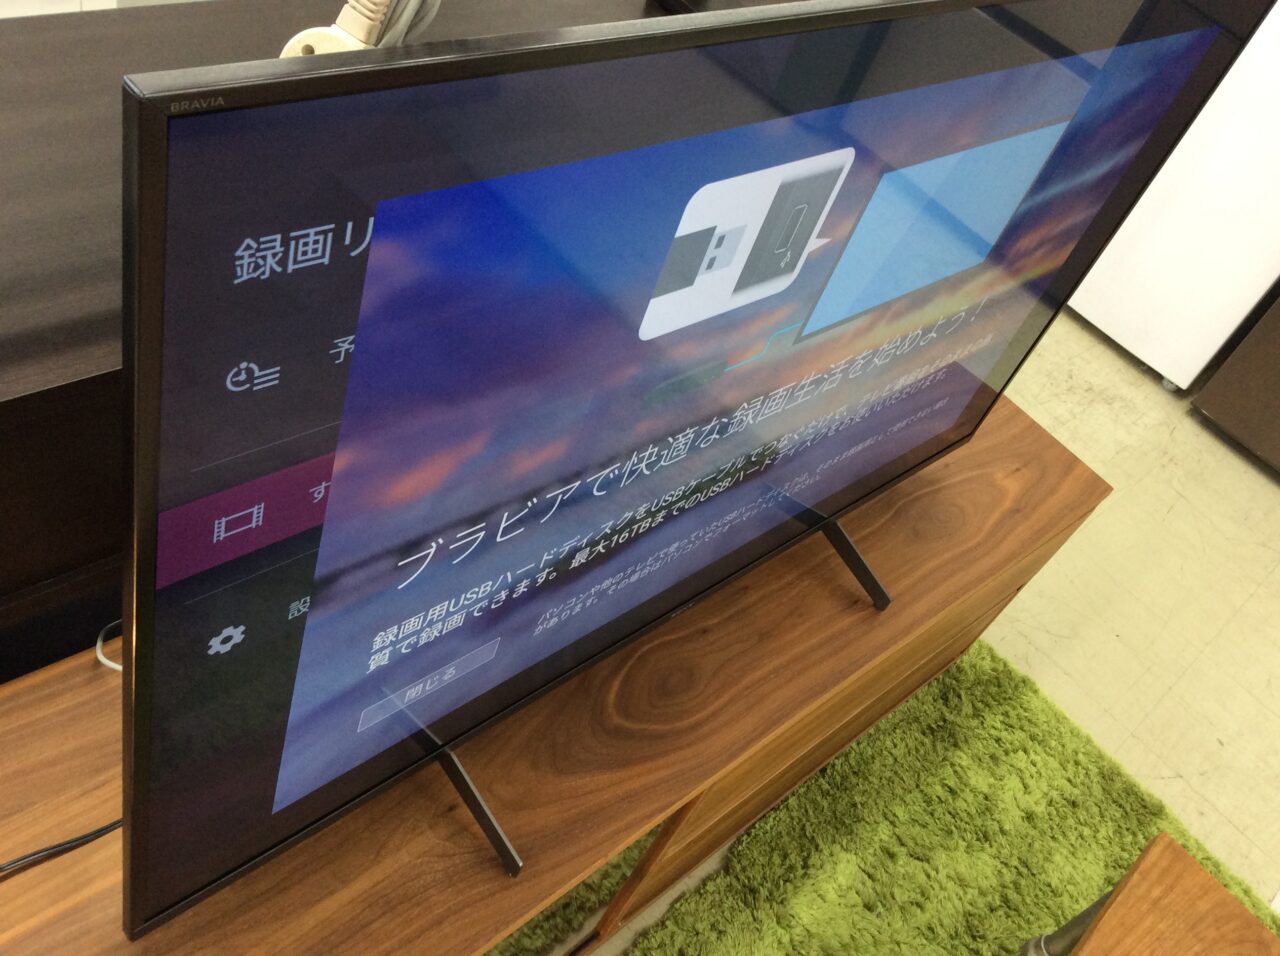 テレビ/映像機器 テレビ SONY 49型 4K液晶テレビ 2020年製 KJ-49X8500H | J-shop